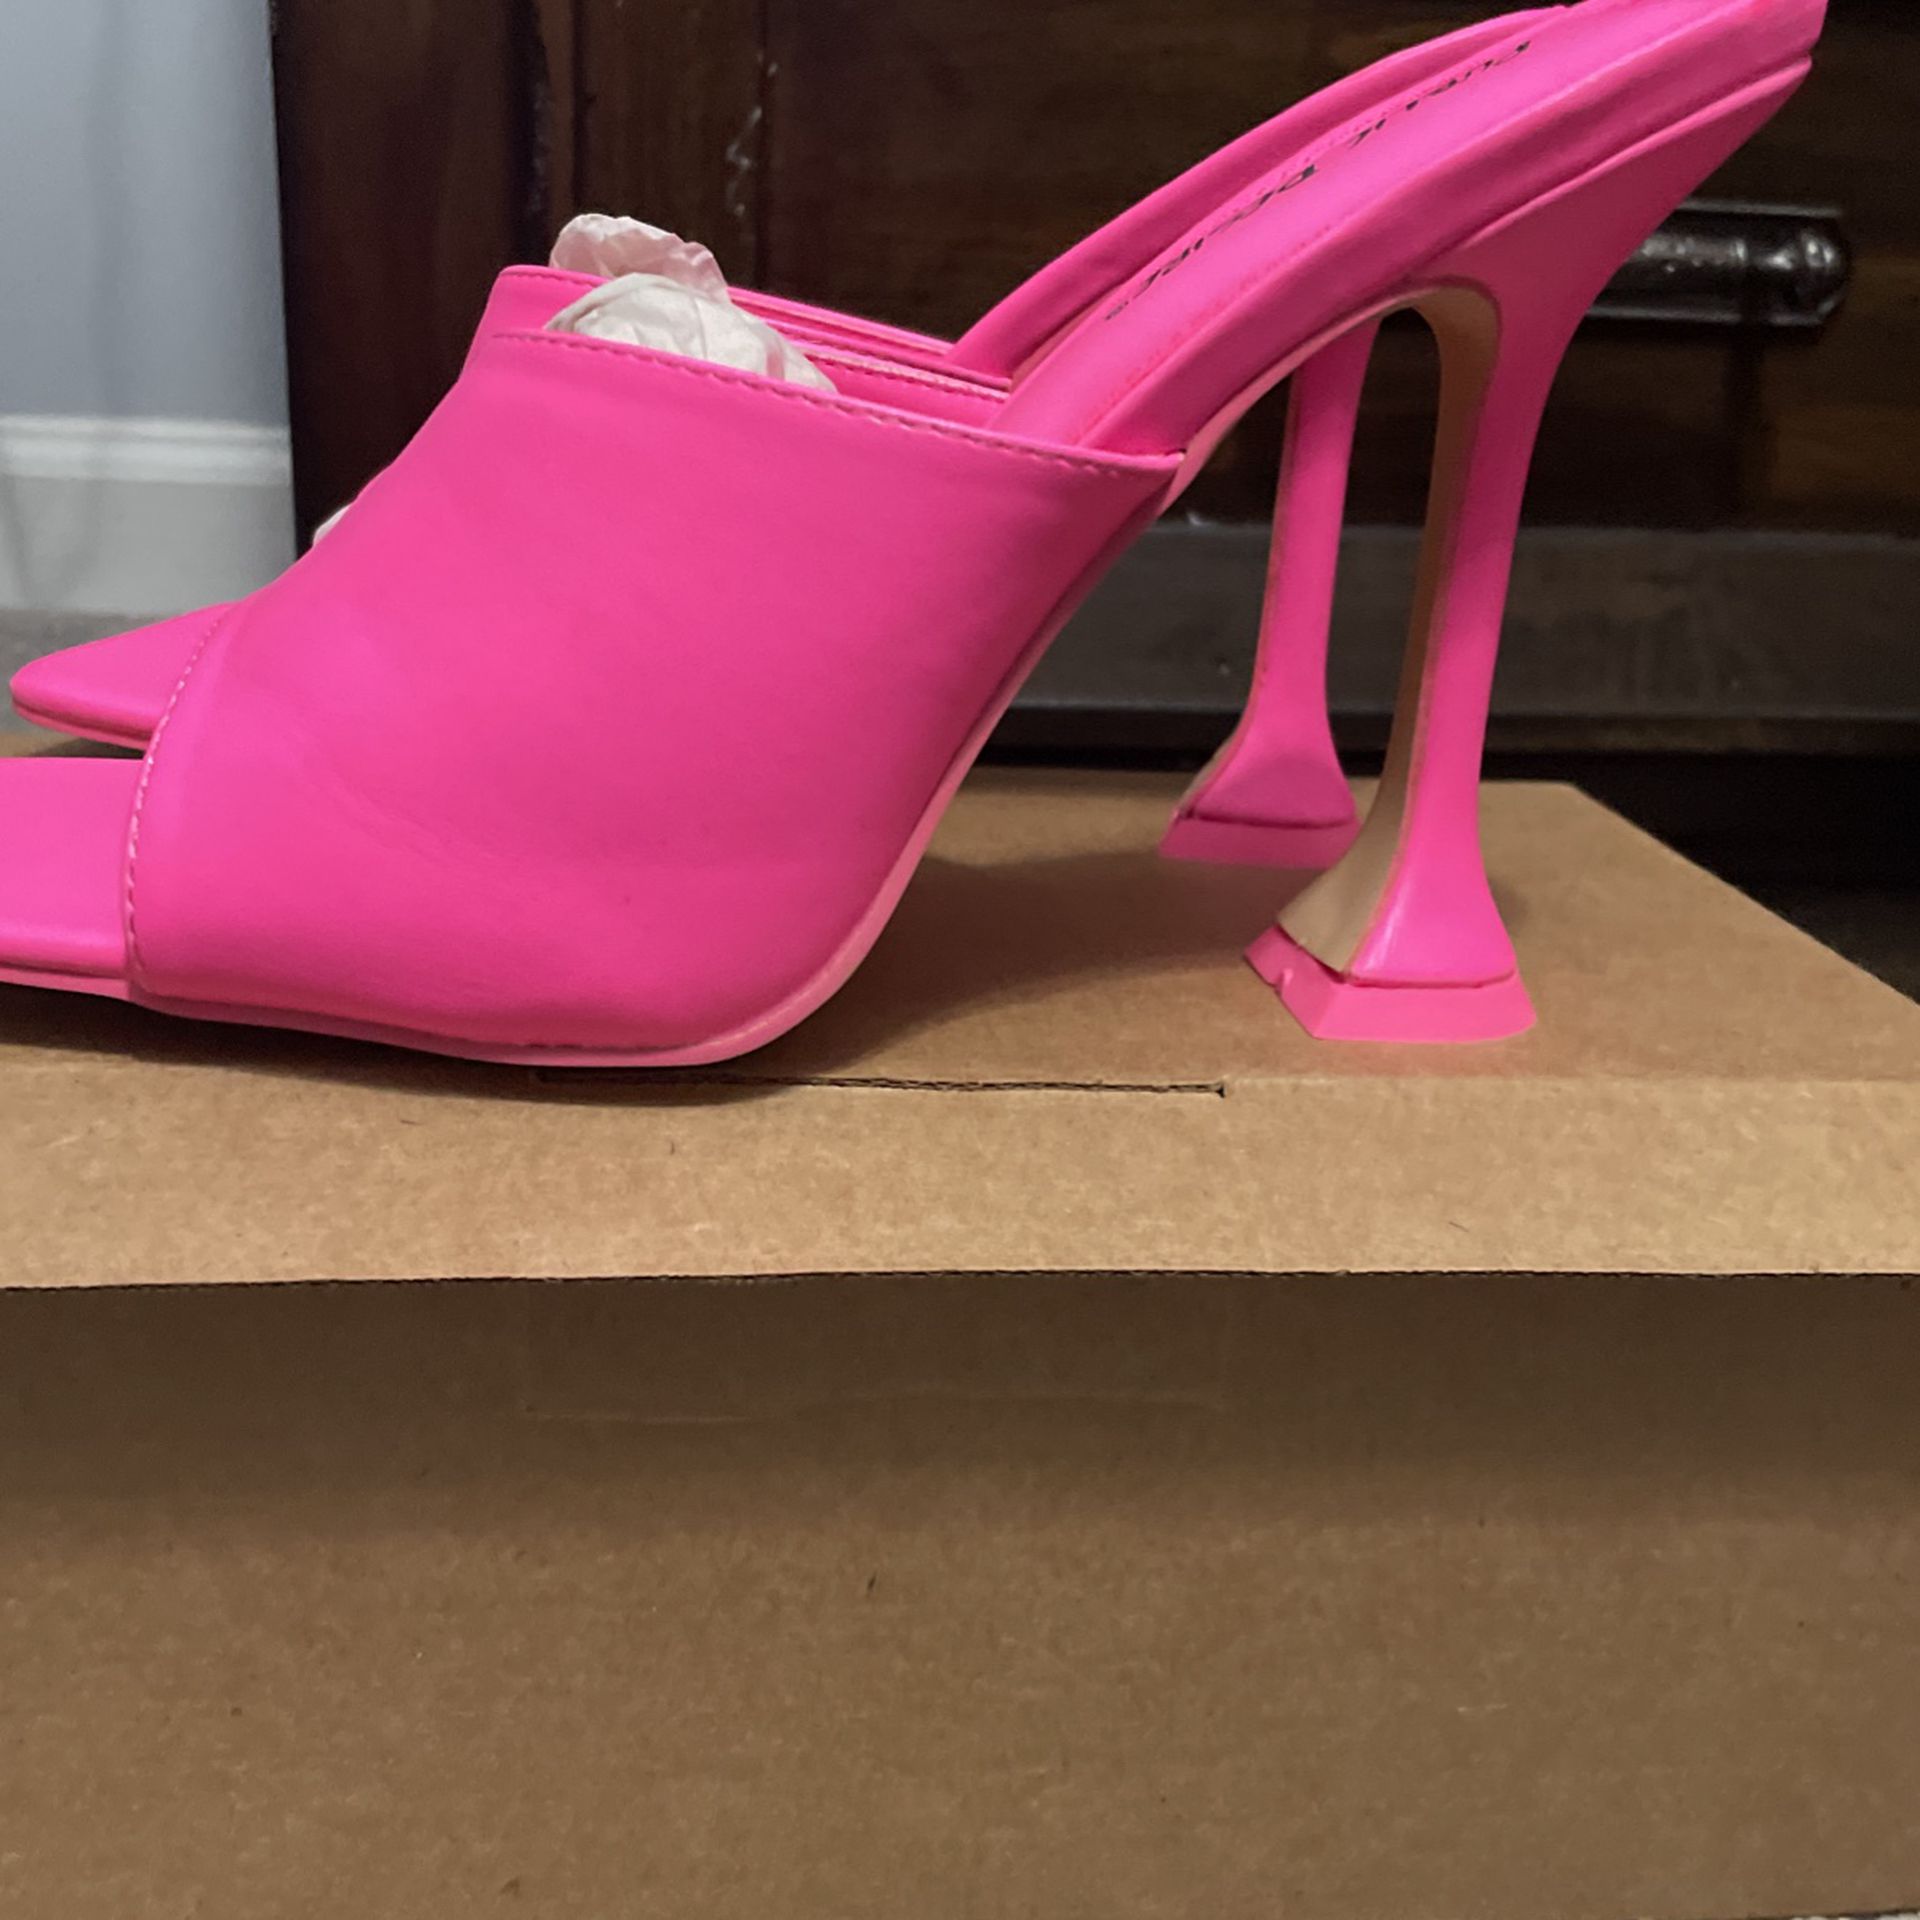 Hot Pink Mule Heels, Size 8w